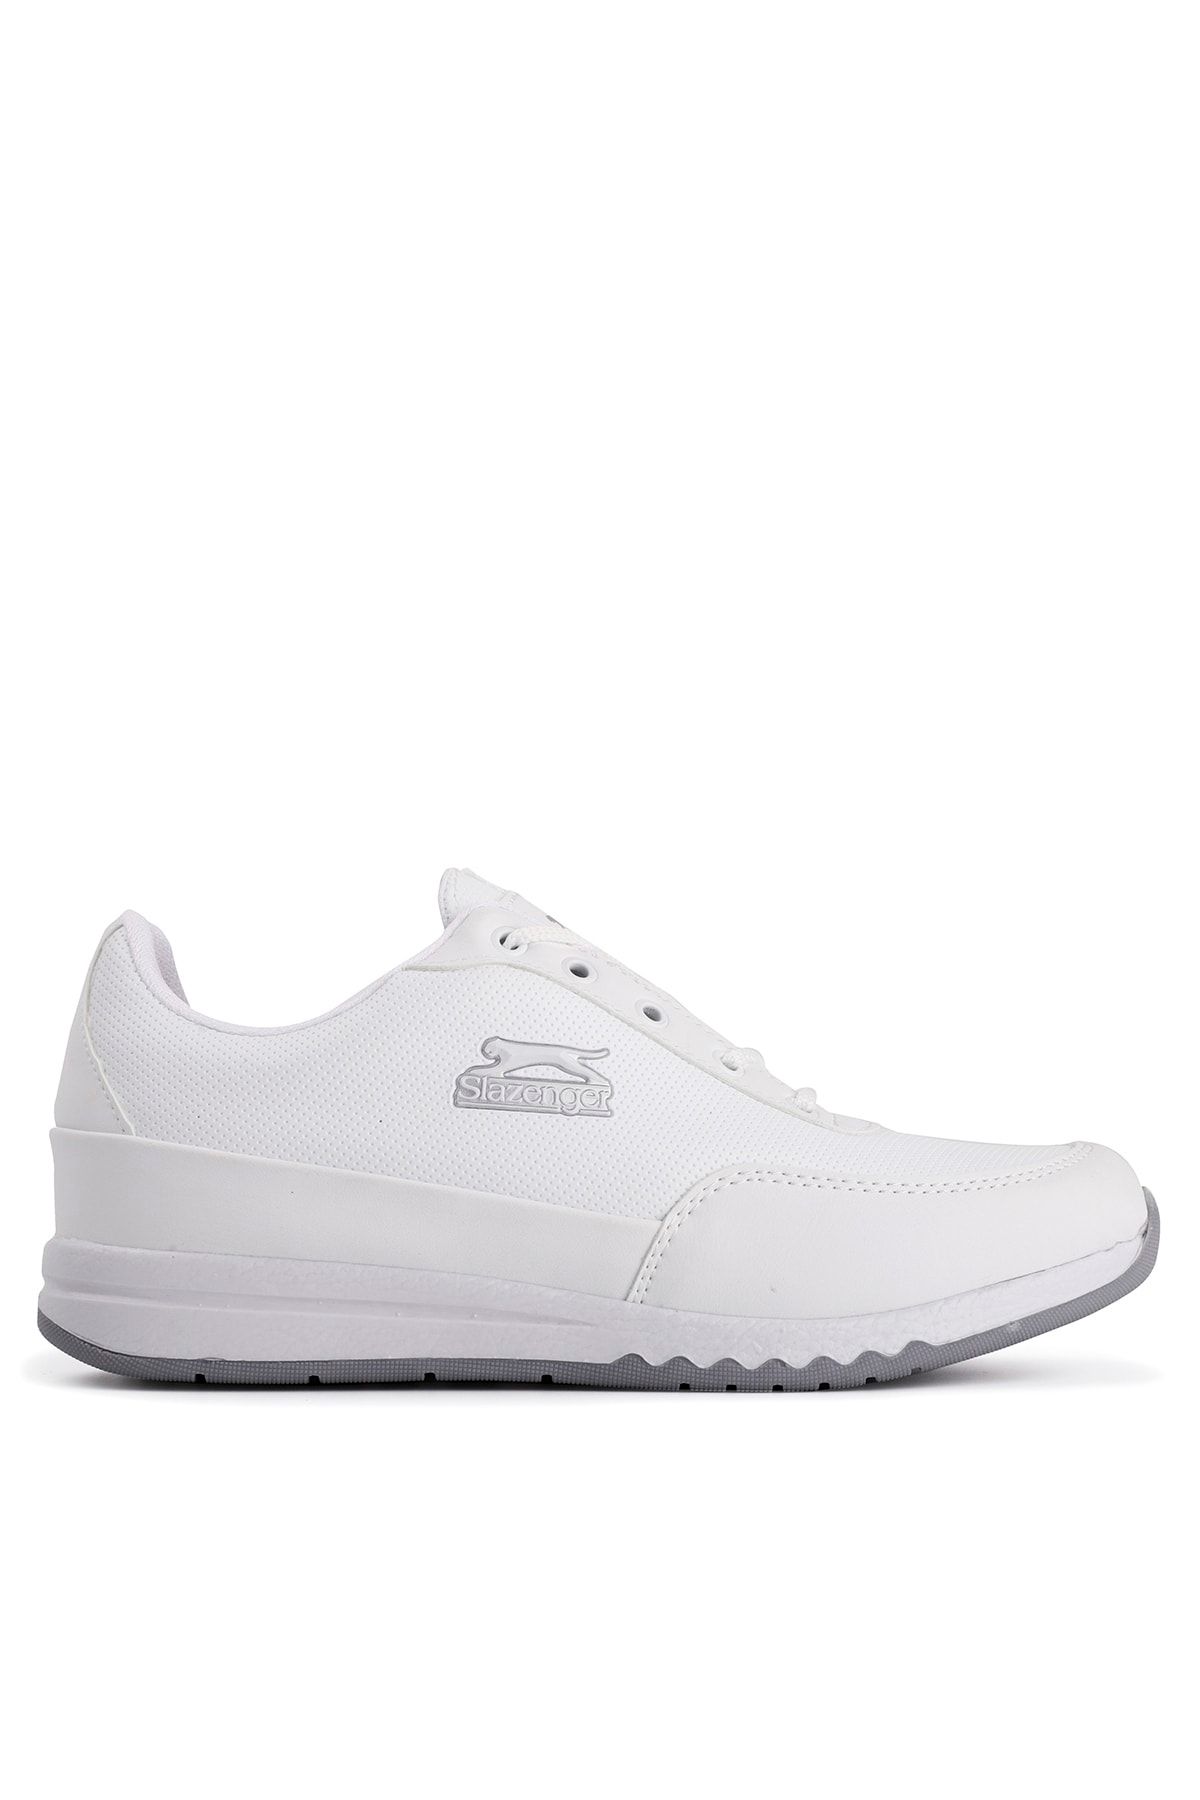 Slazenger Angle Sneaker Kadın Ayakkabı Beyaz Sa20lk045